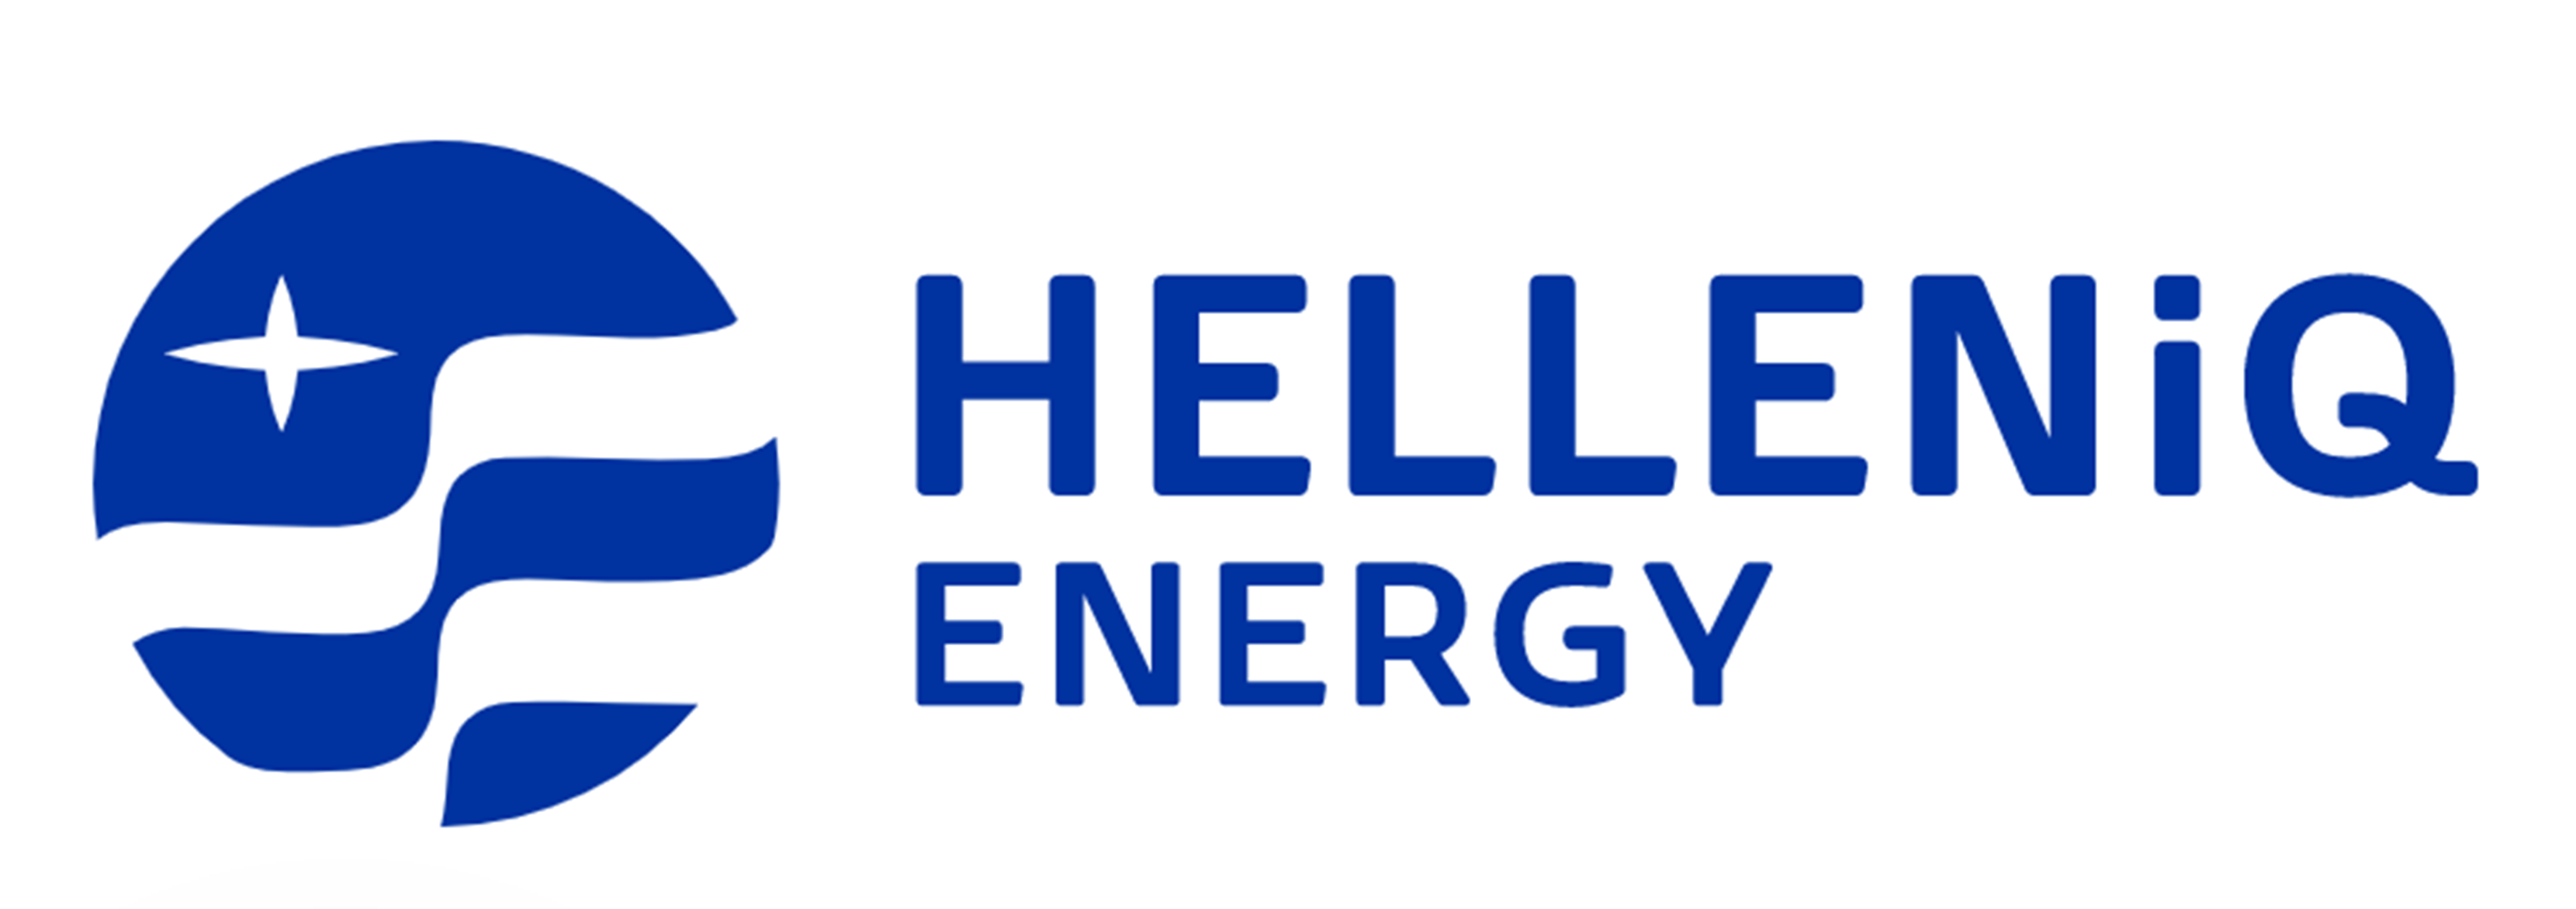 helleniq-energy.png